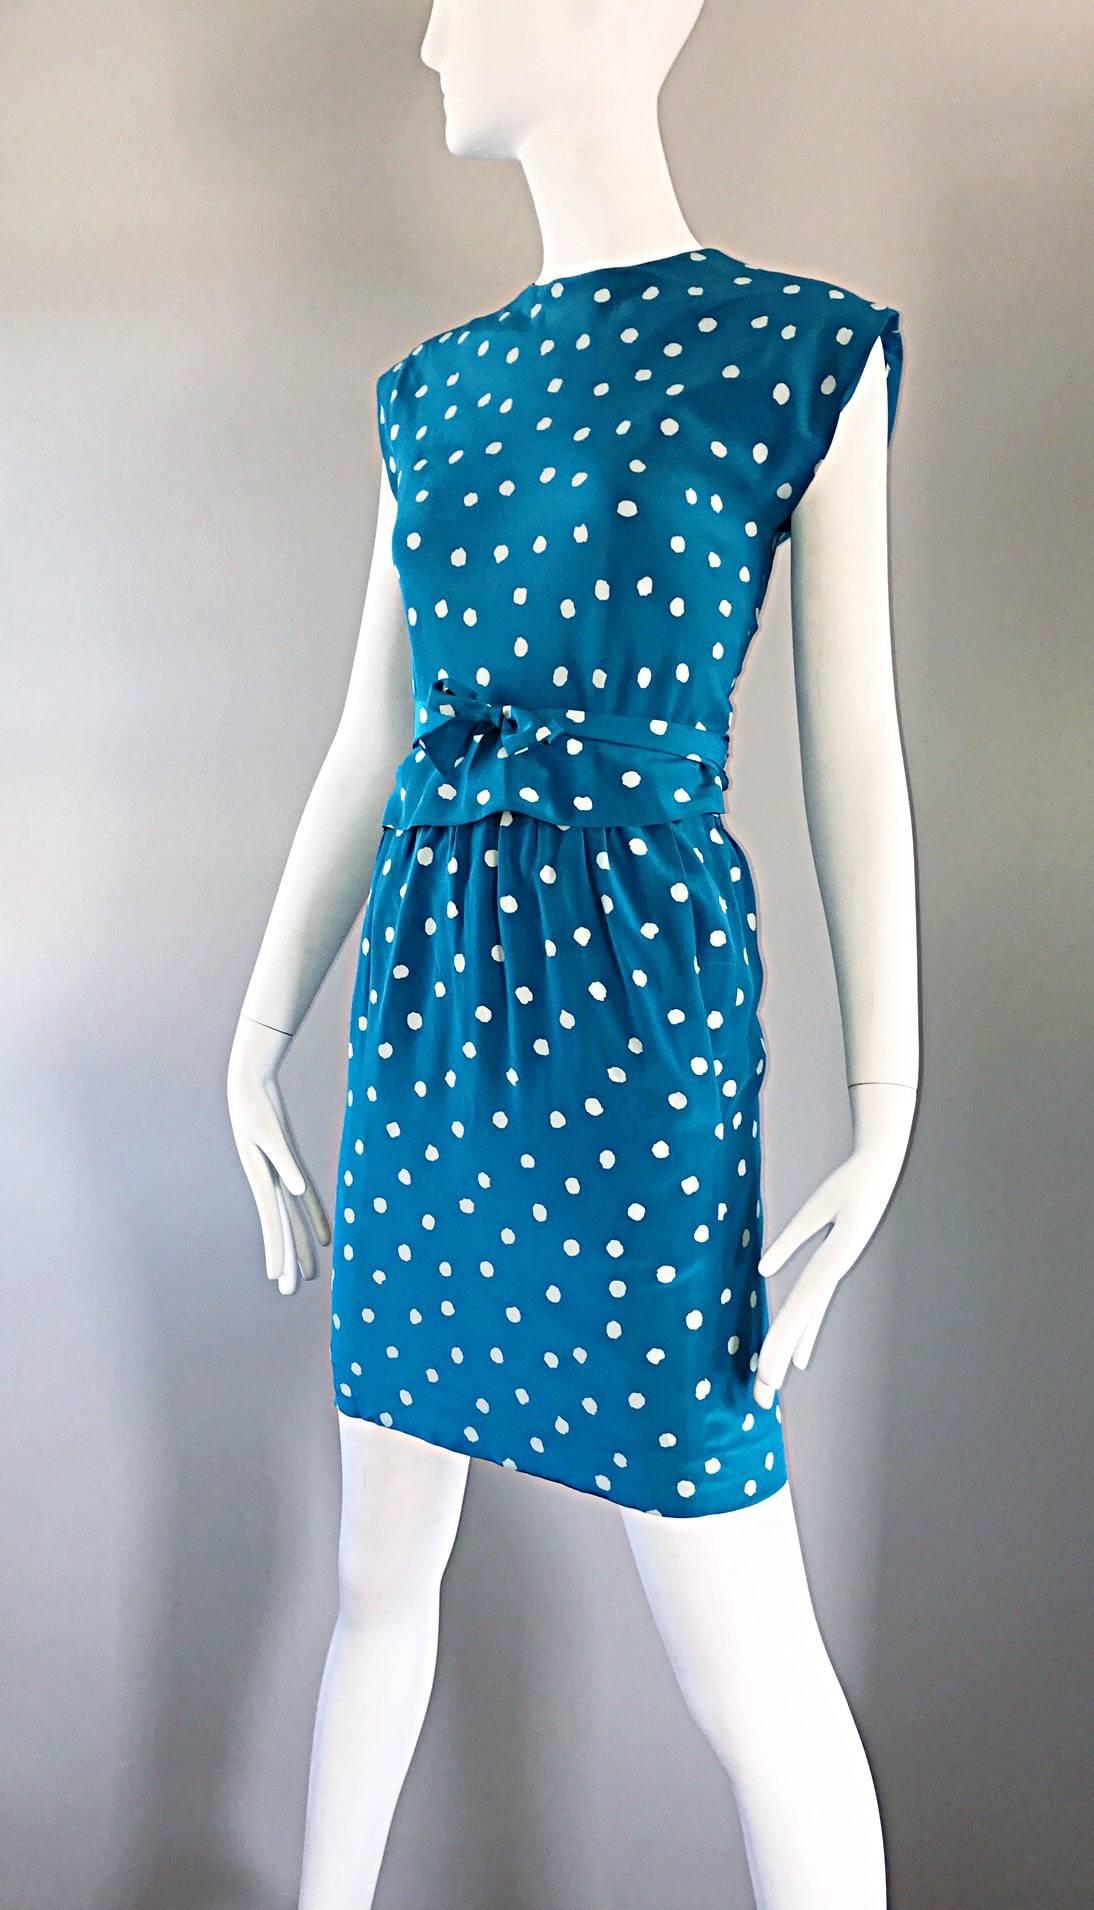 Vintage Oscar de la Renta Bright Blue and White Polka Dot Dress Ensemble Size 4 For Sale 1